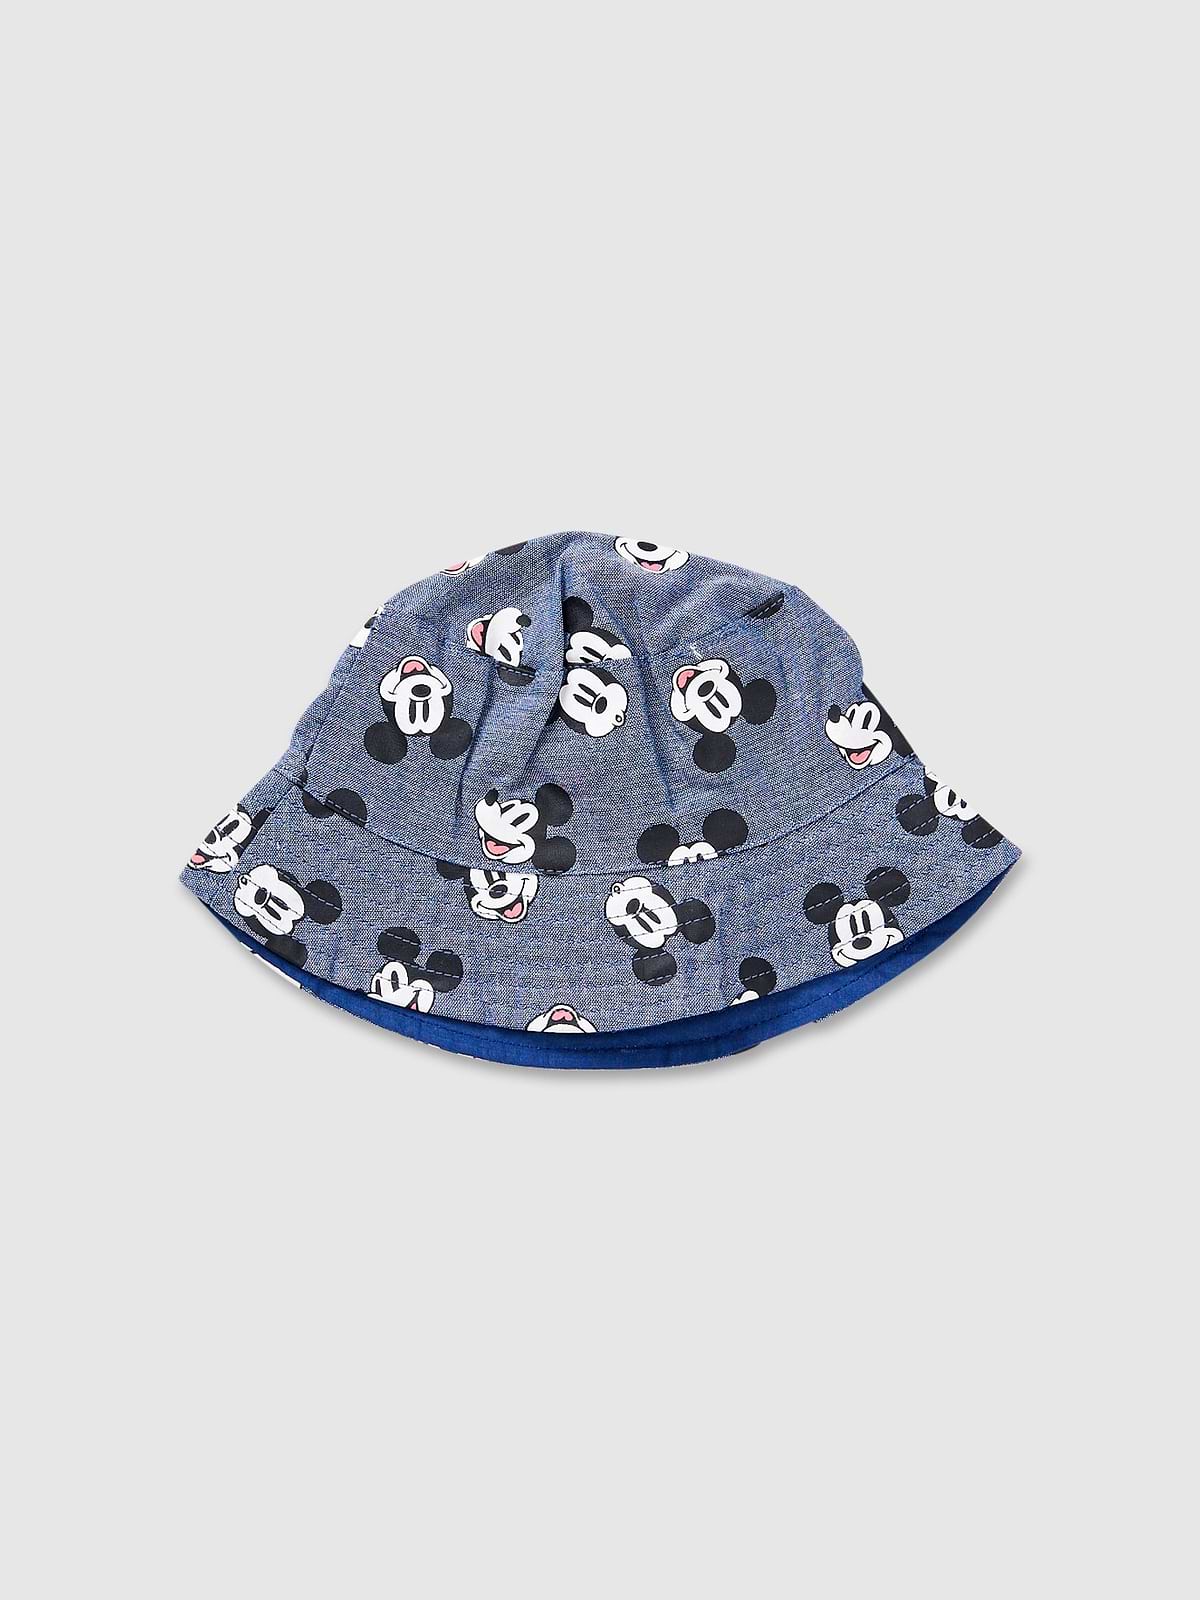 כובע באקט בהדפס מיקי מאוס / תינוקות יוניסקס